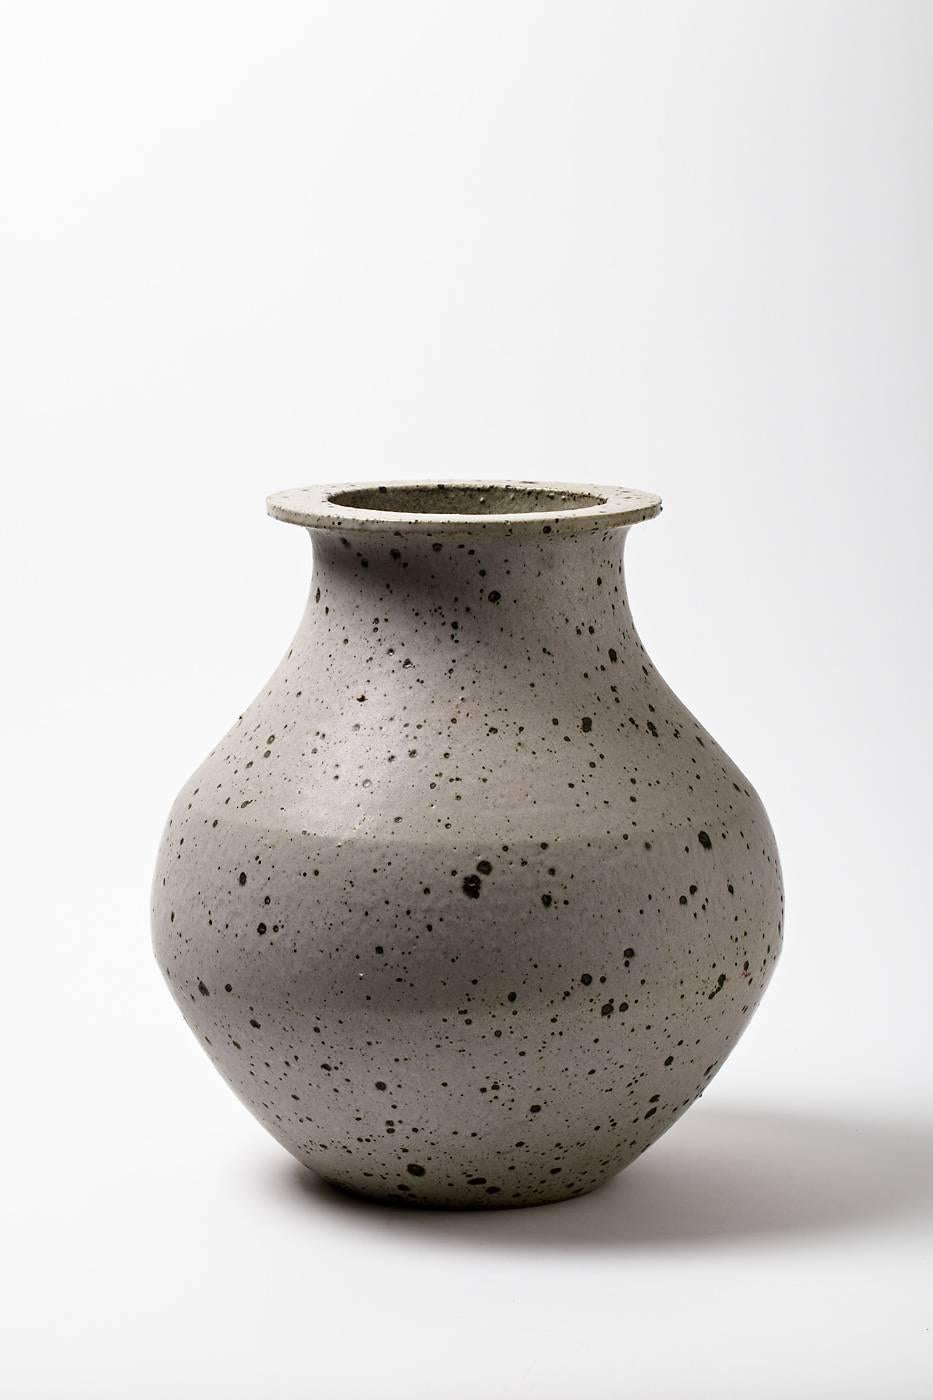 French Very Big Stoneware Vase by Robert Deblander, circa 1970-1975